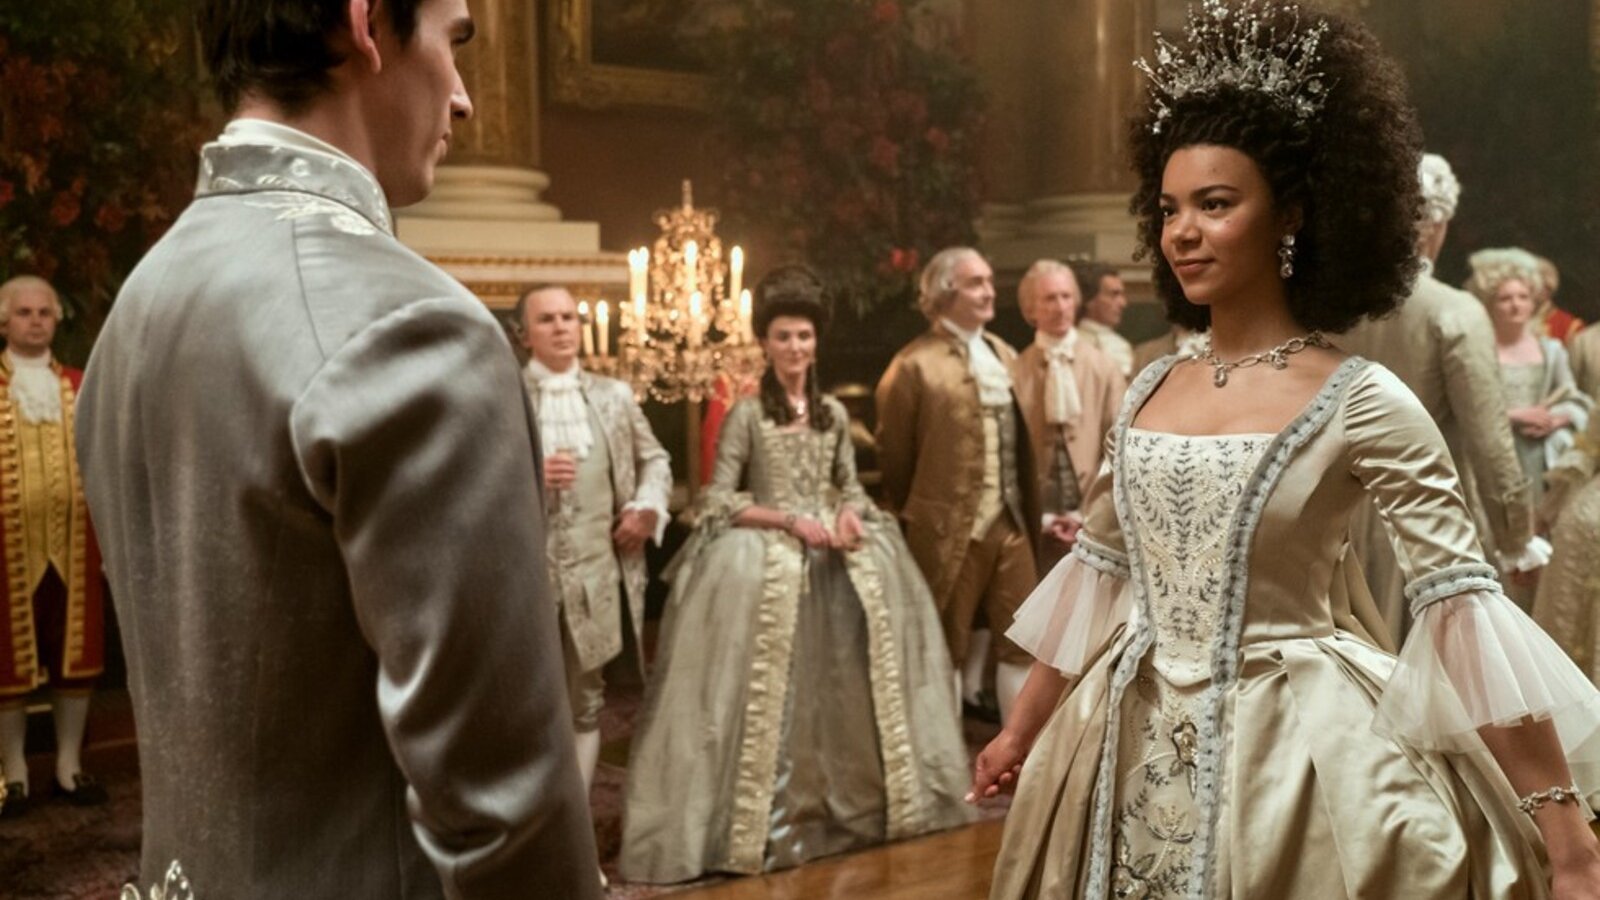 La Regina Carlotta: Una Storia di Bridgerton, le musiche della serie Netflix ora disponibili in digitale